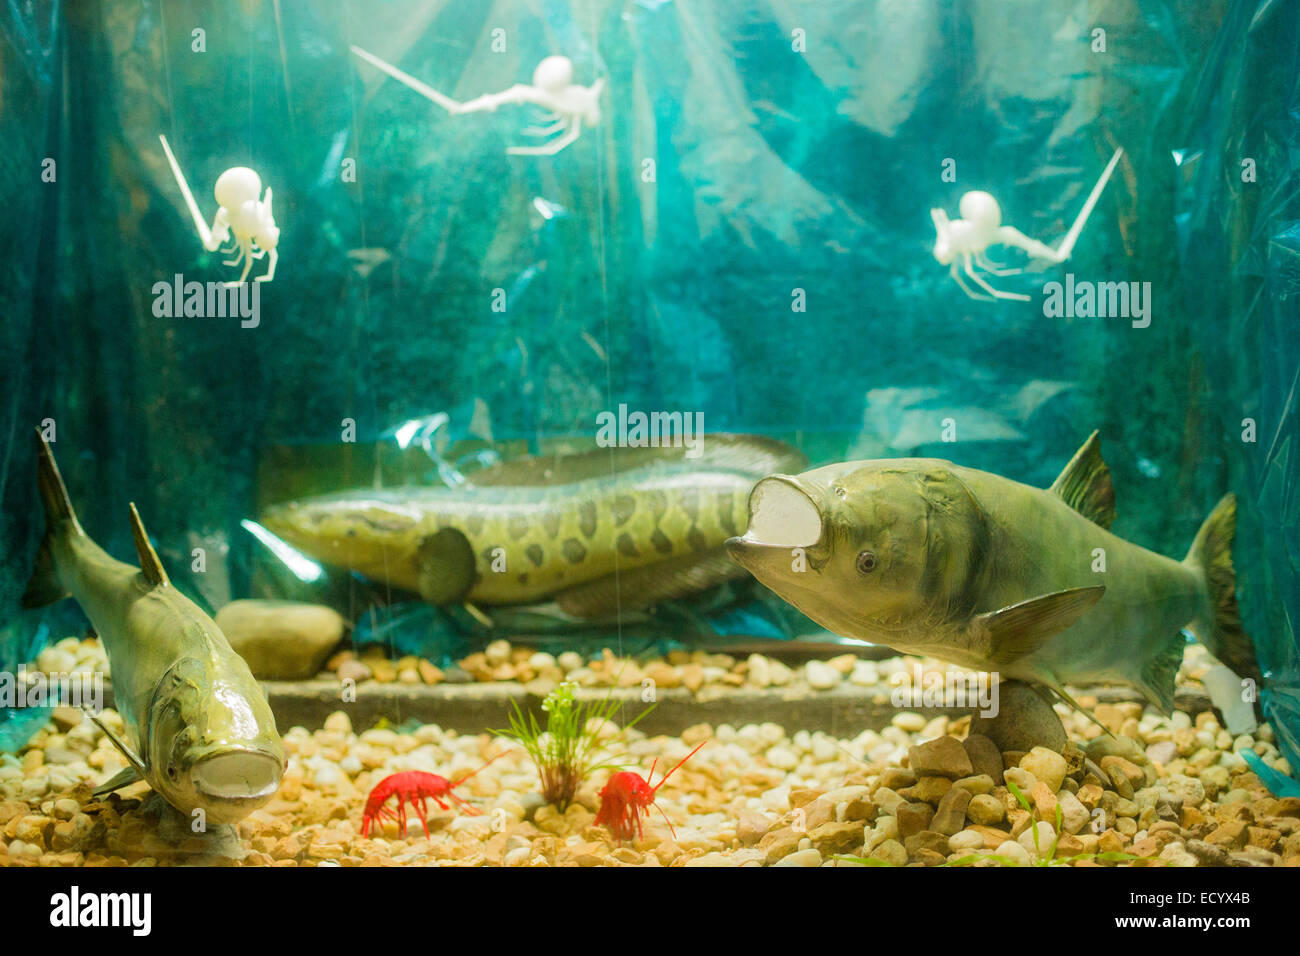 Detroit, Michigan - Modèles de l'invasive la carpe asiatique à l'Aquarium de Belle-Isle. Banque D'Images